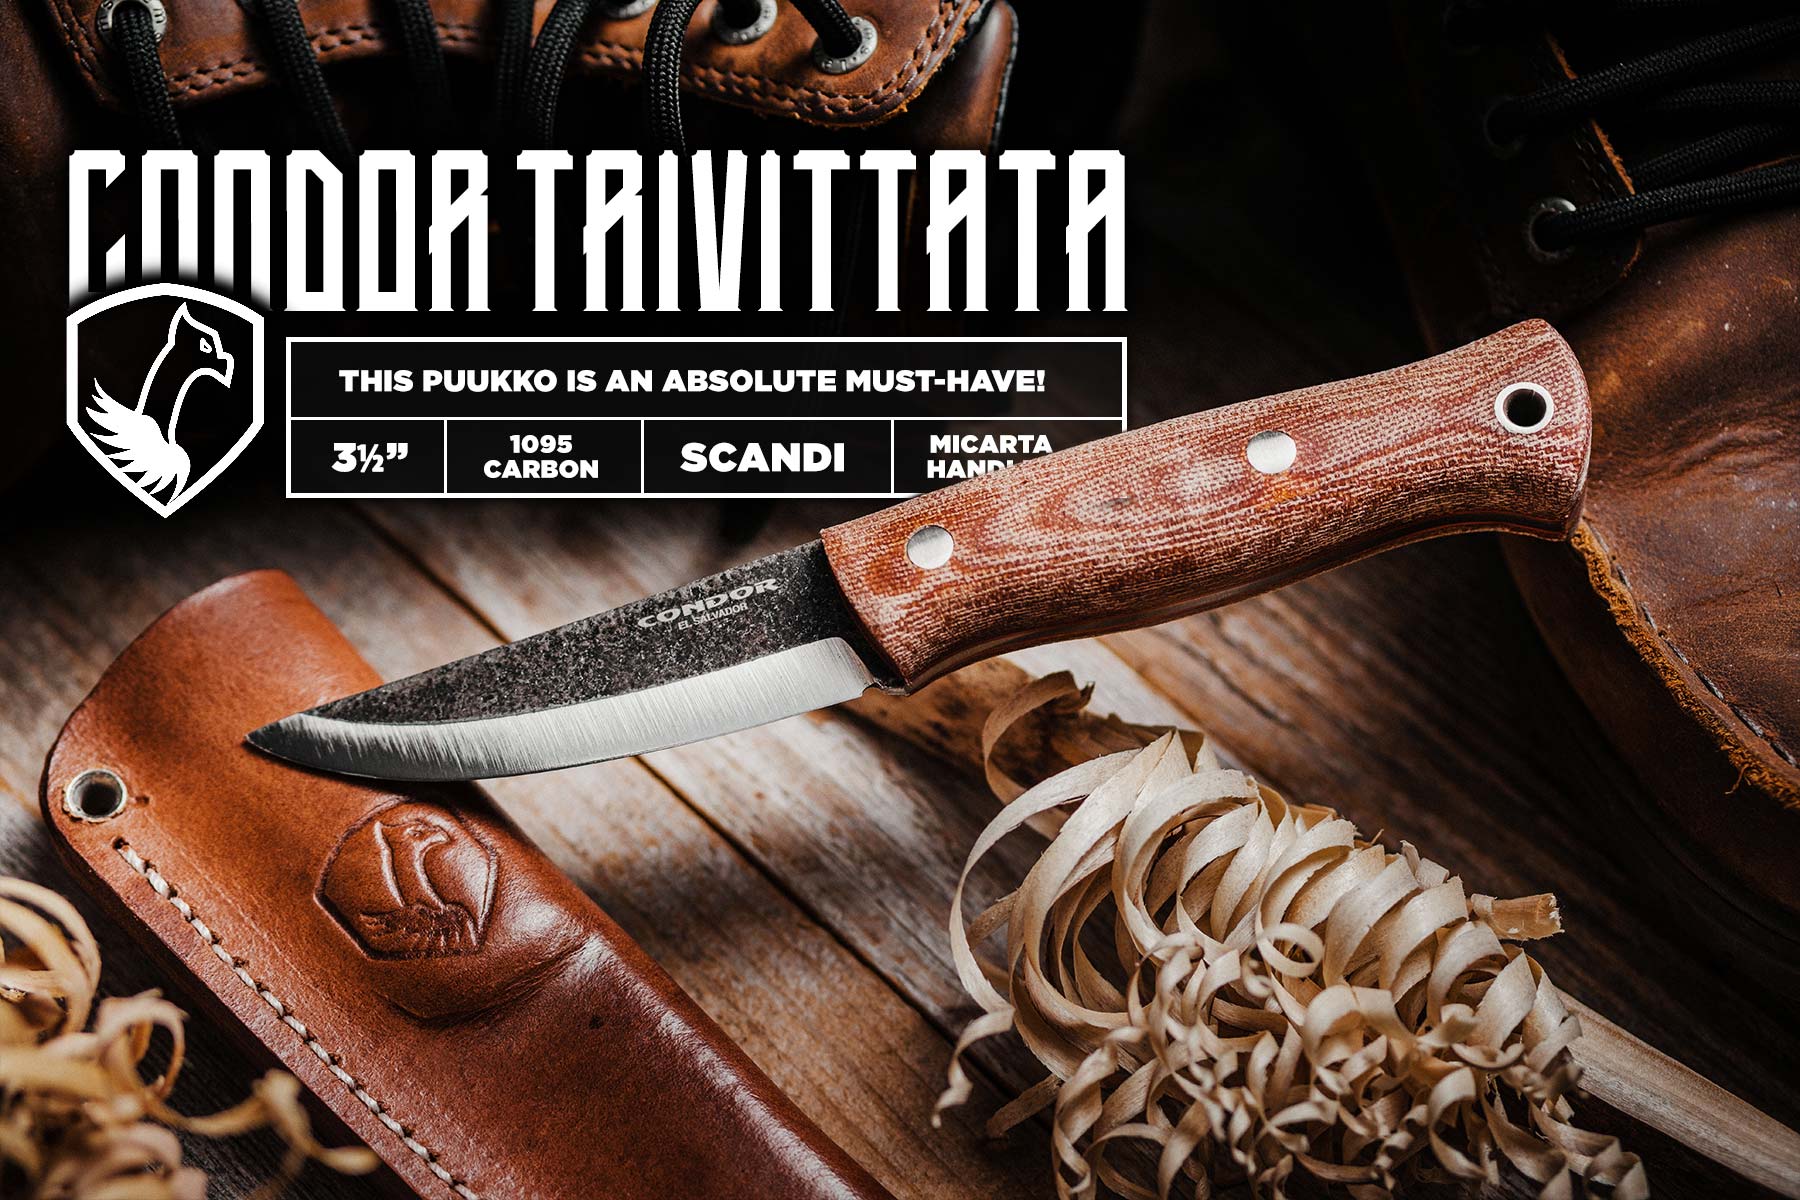 Condor Trivittata Puukko Knife Review • Condor's Best Design?!